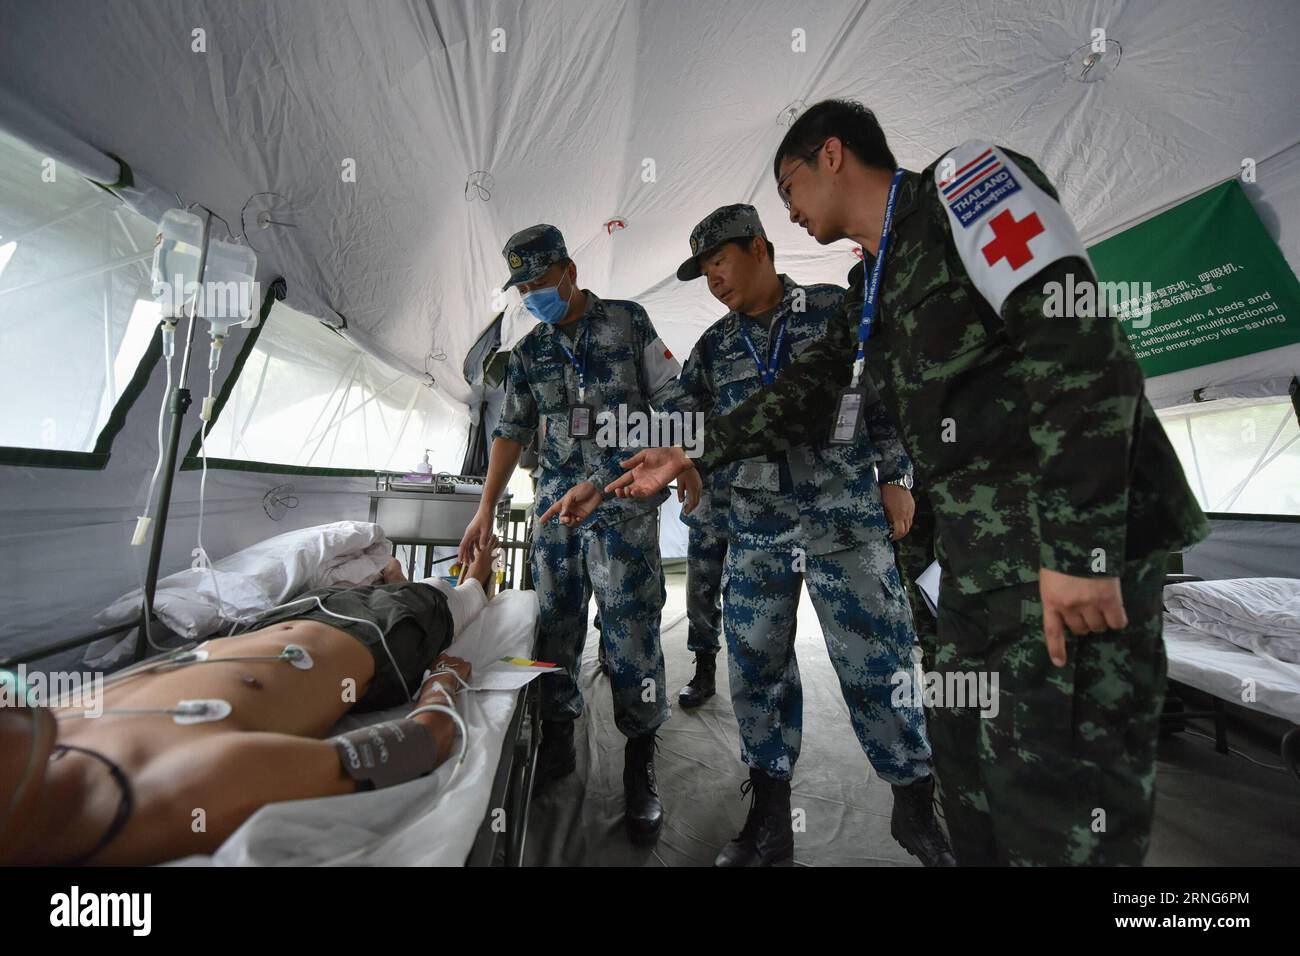 CHONBURI, 8 settembre 2016 -- gli ufficiali medici cinesi parlano con gli ufficiali tailandesi di un paziente durante l'ASEAN Defense Ministers Meeting-Plus Military Medicine-Humanitarian Assistance and Disaster Relief Joint Exercise (AM-HEX 2016) a Chonburi, Thailandia l'8 settembre 2016. Le truppe di 18 paesi -- 10 stati membri dell'ASEAN e i suoi otto partner di dialogo lunedì hanno iniziato un esercizio congiunto sull'assistenza umanitaria e il soccorso in caso di catastrofi qui in Thailandia. )(axy) THAILAND-CHONBURI-AM-HEX 2016-JOINT EXERCISE LixMangmang PUBLICATIONxNOTxINxCHN Chonburi 8 settembre 2016 Chinese Medical Officer Talk with Tha Foto Stock